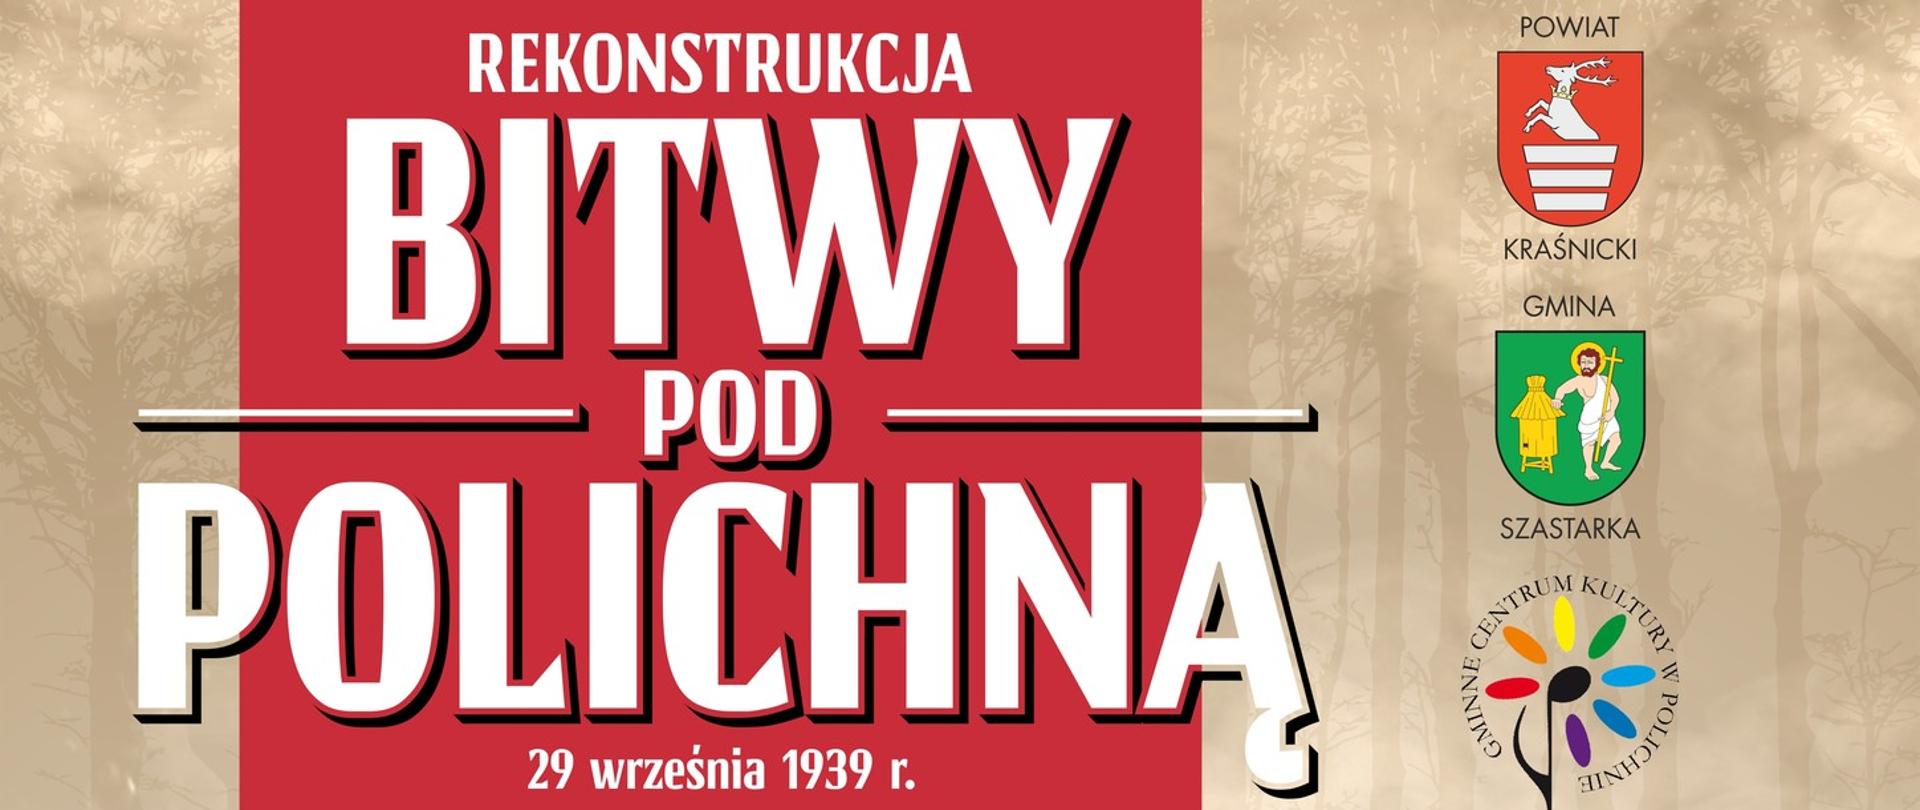 Plakat dotyczący rekonstrukcji bitwy pod Polichną